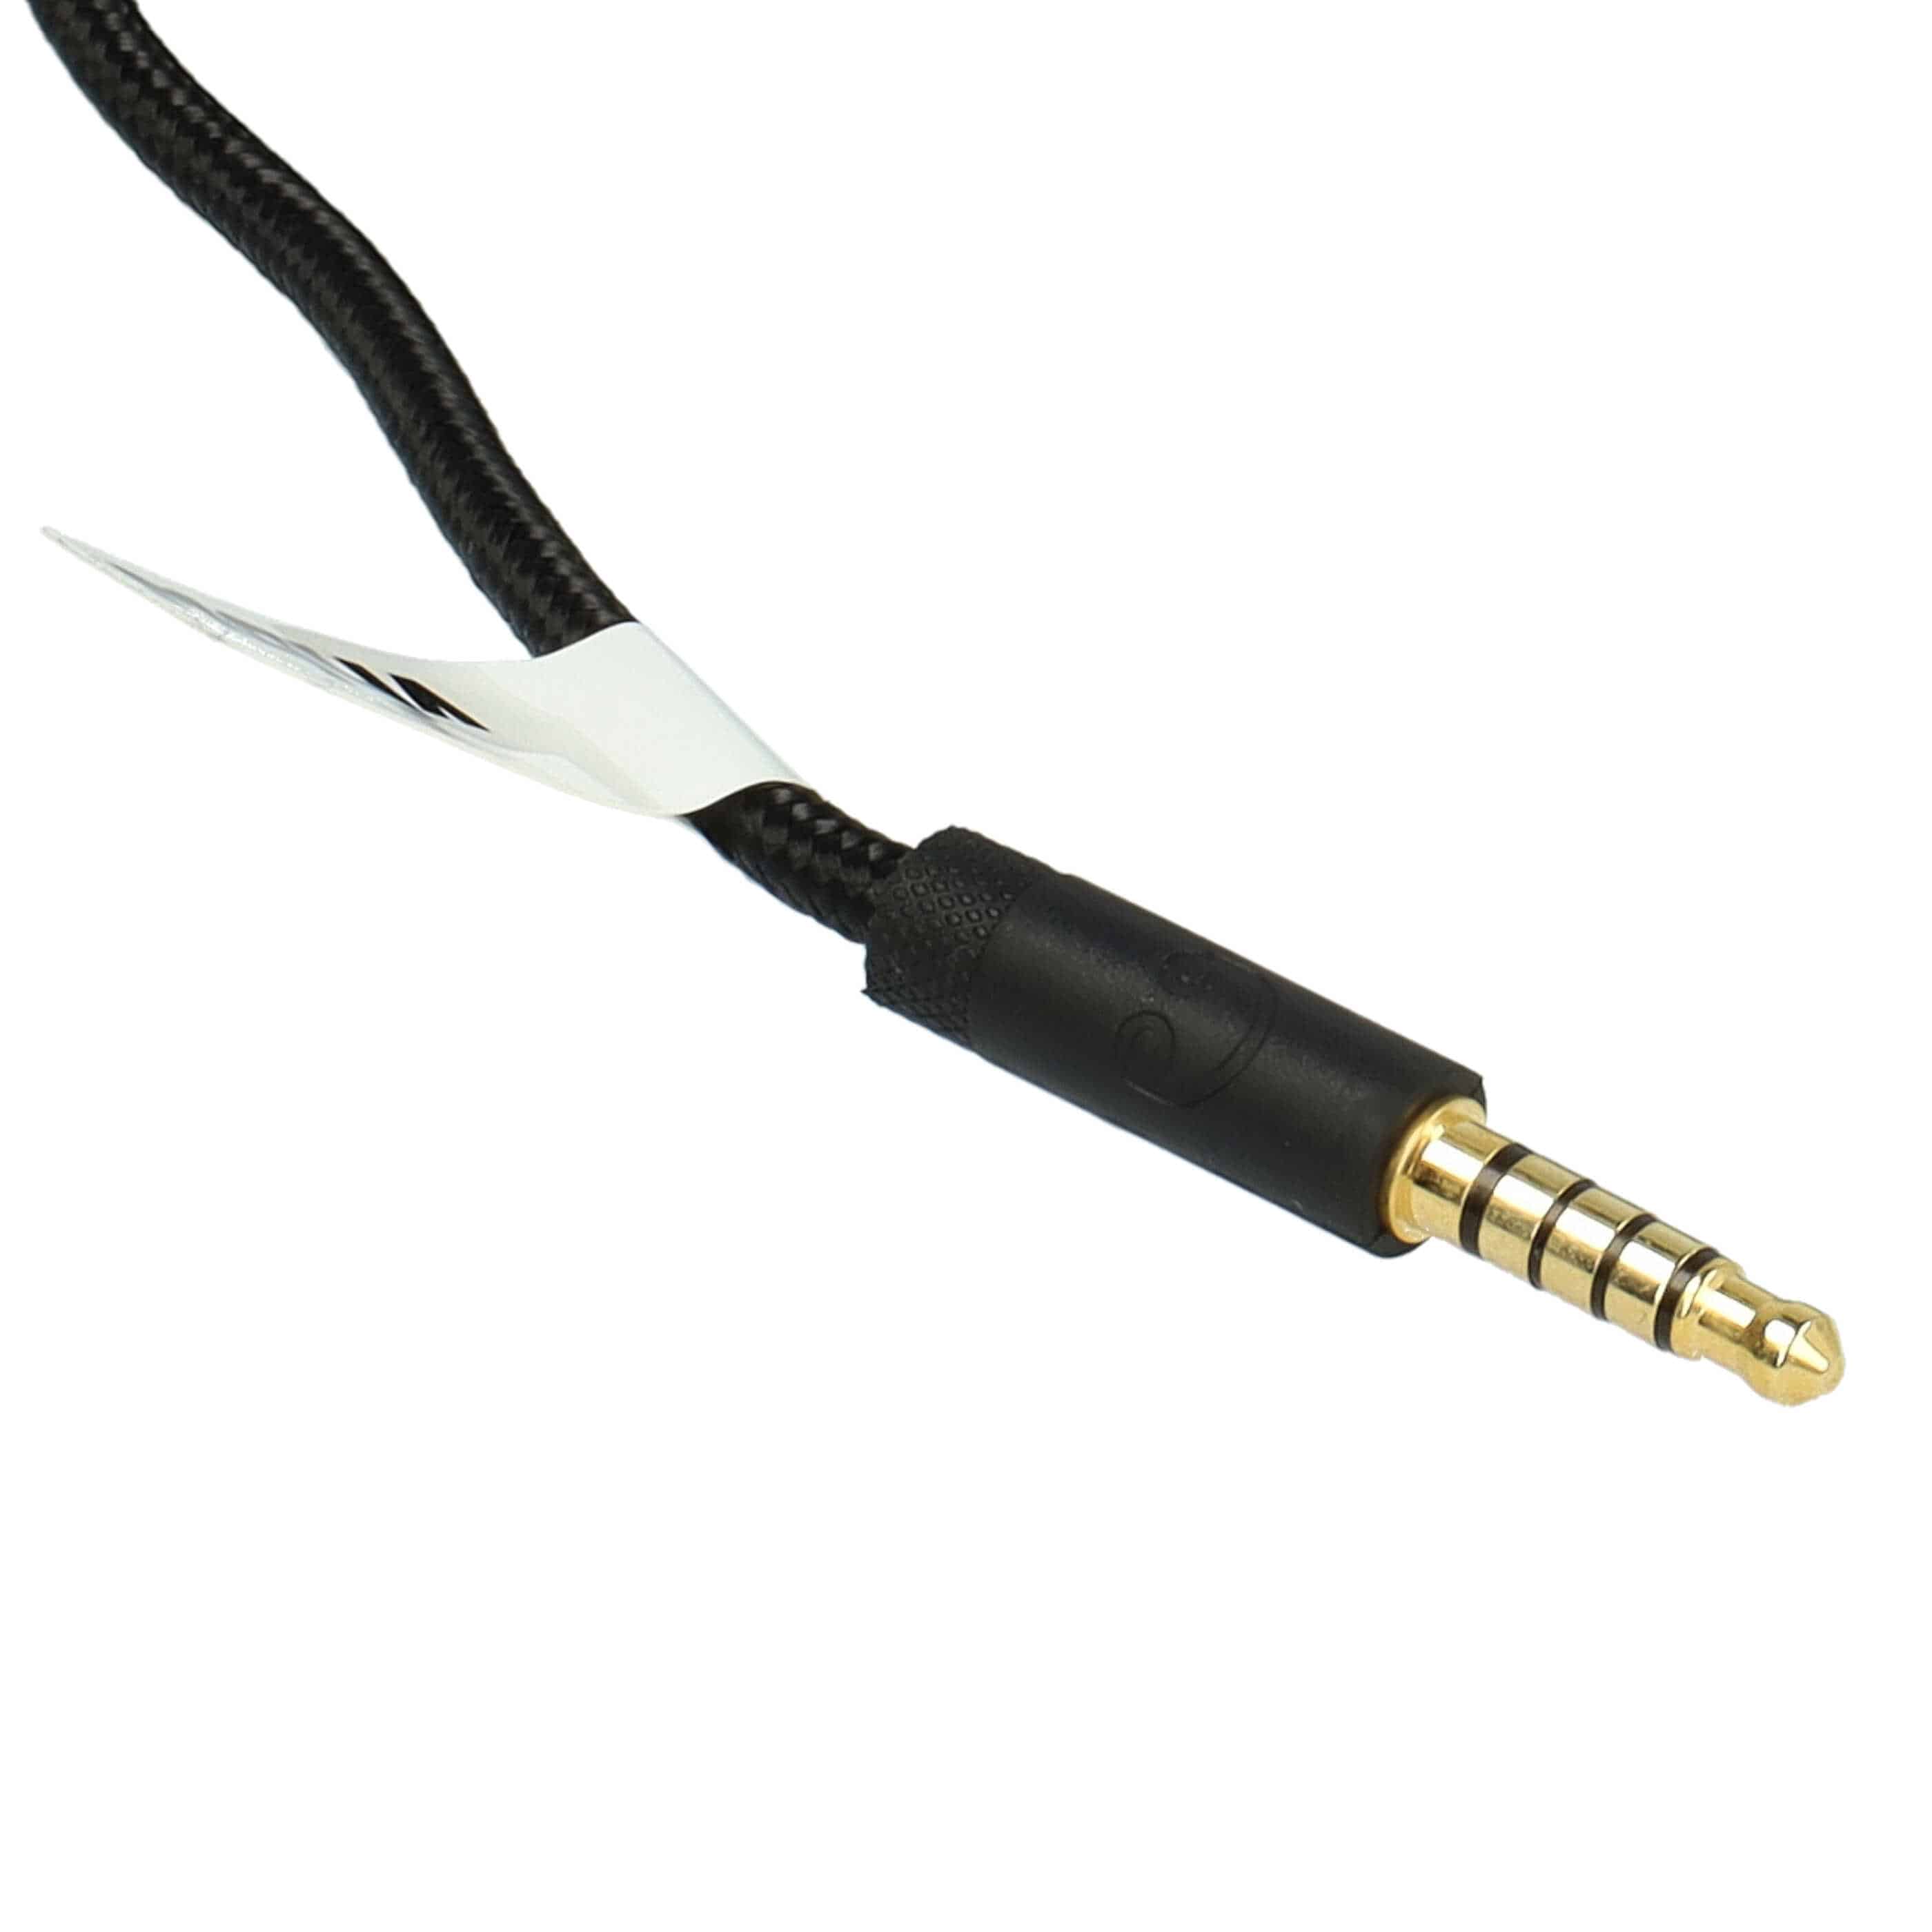 Cable audio AUX a conector jack de 3,5 mm para auriculares Logitech G Pro, G Pro X, G233, G433